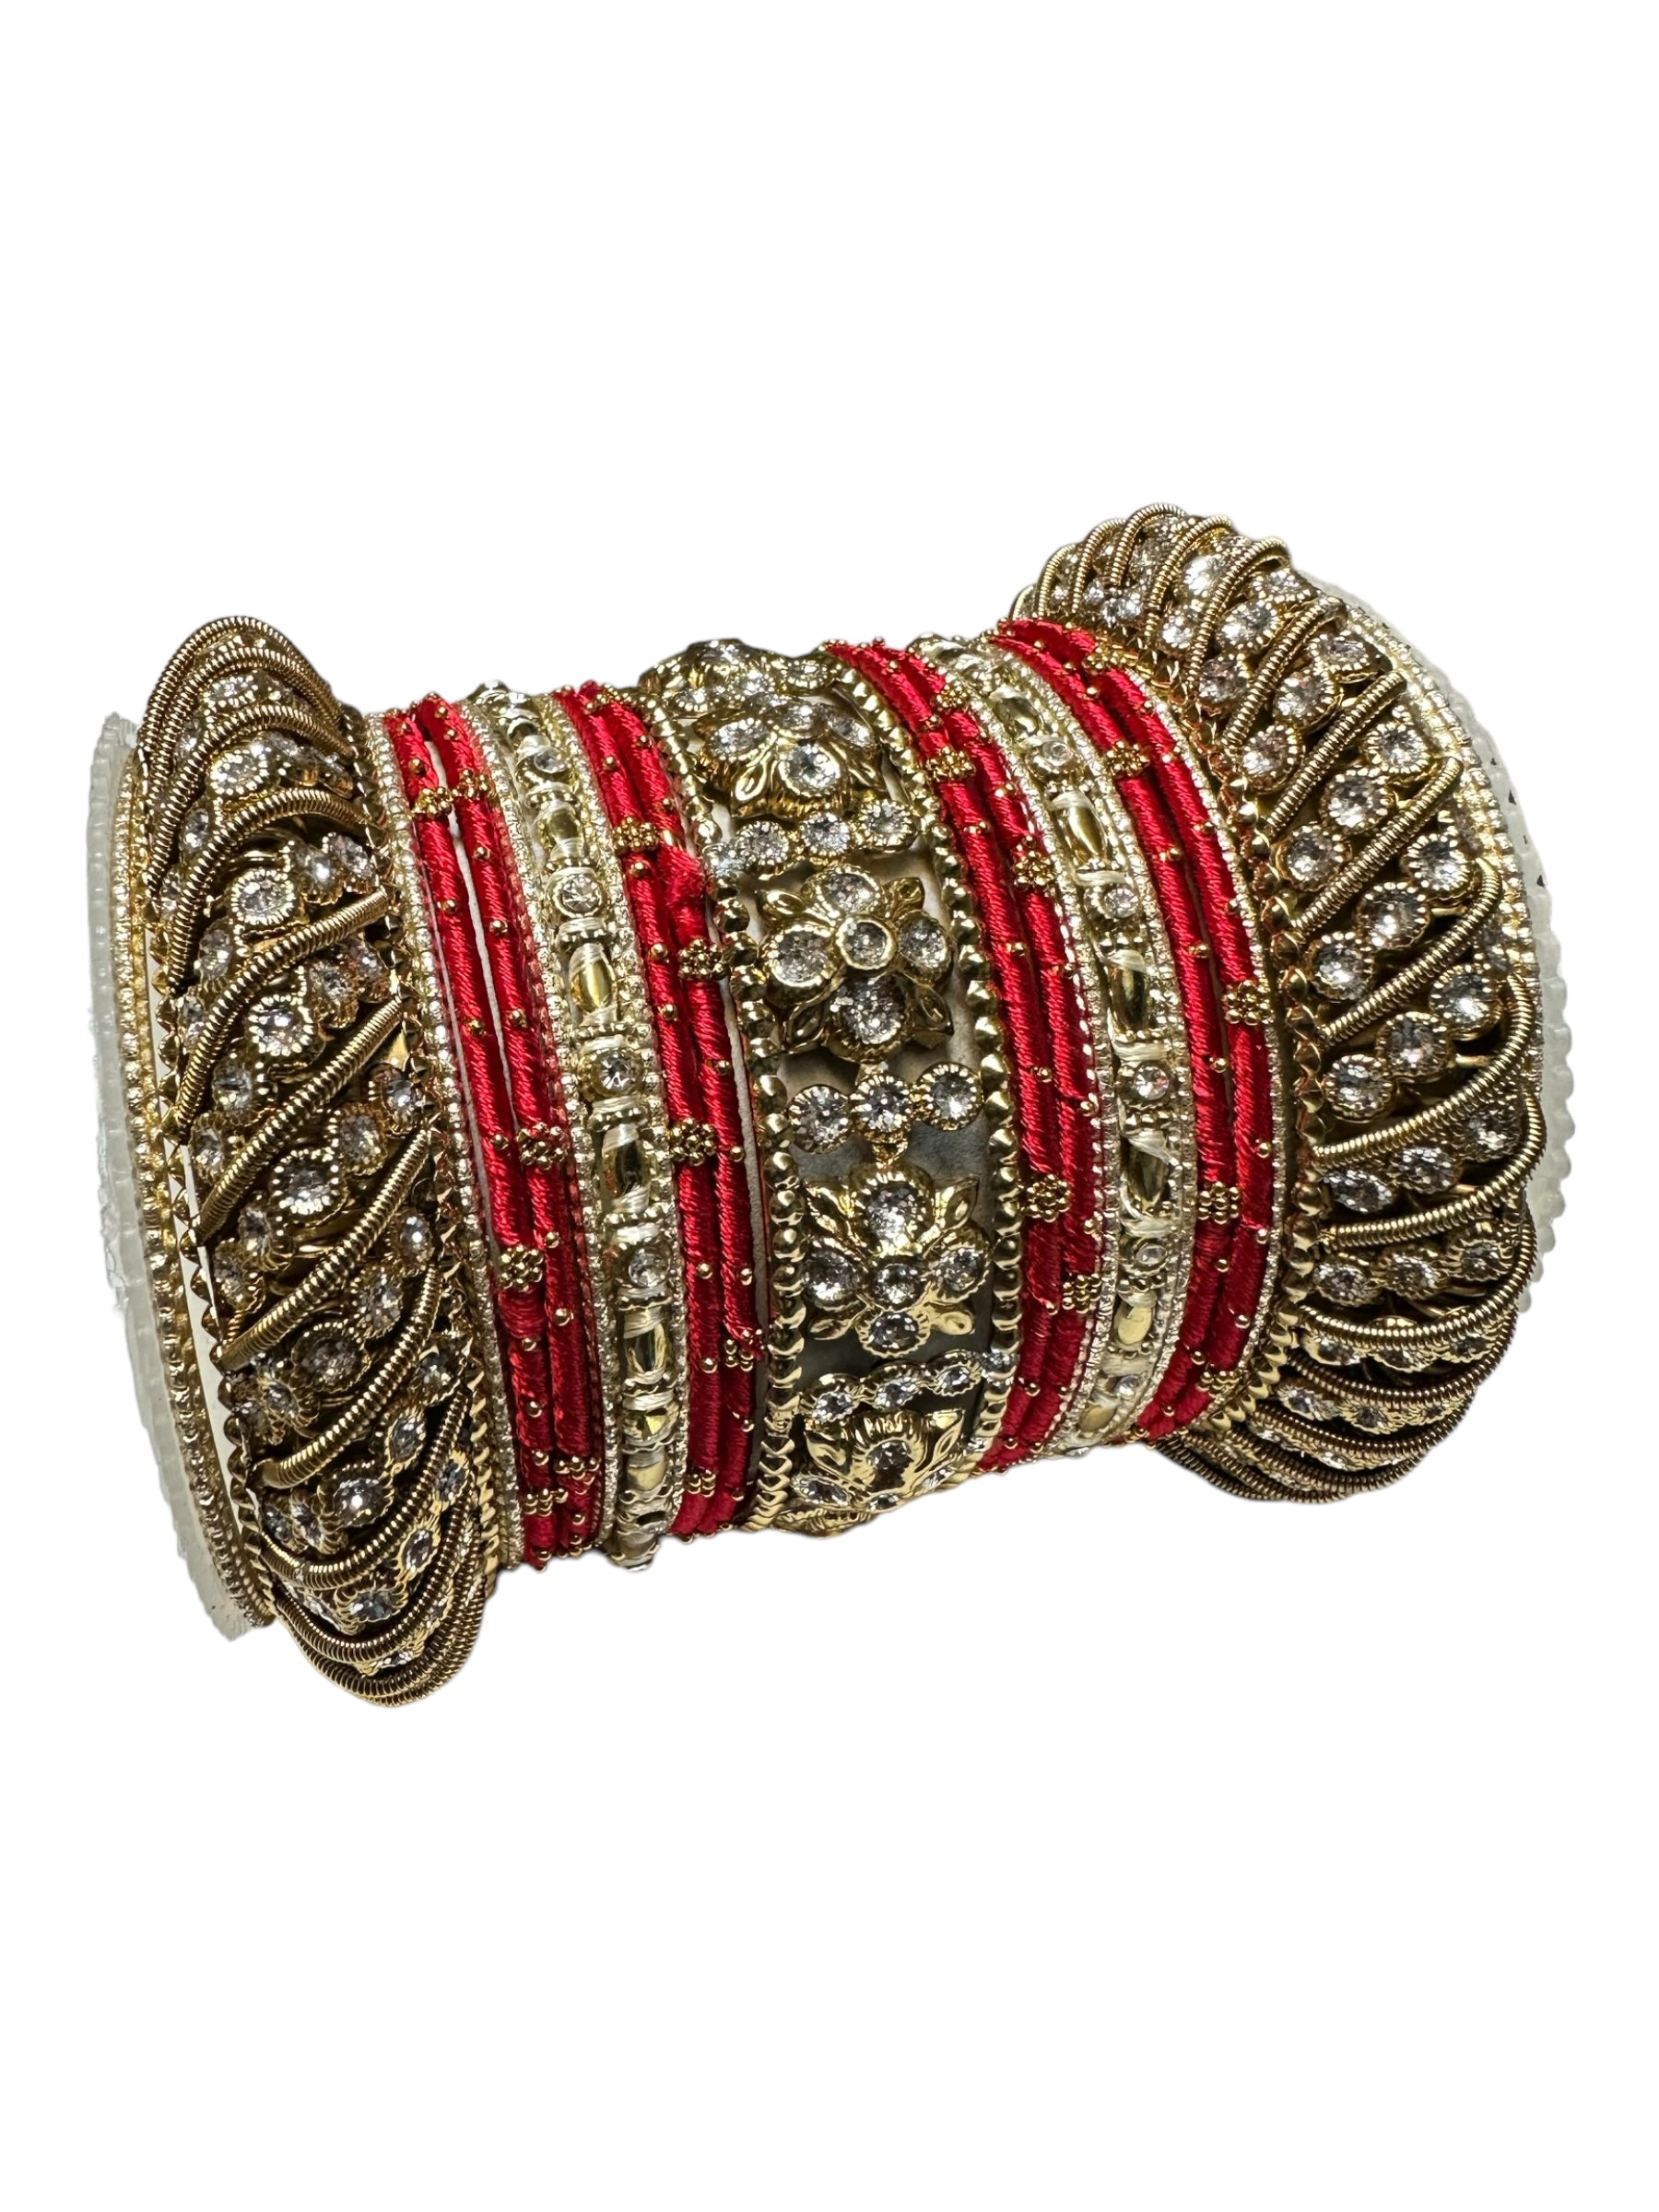 1065  Premium Indian Jewelry Metal Bangle Kangan Set Red Peach Gold Greeen Pink Blue